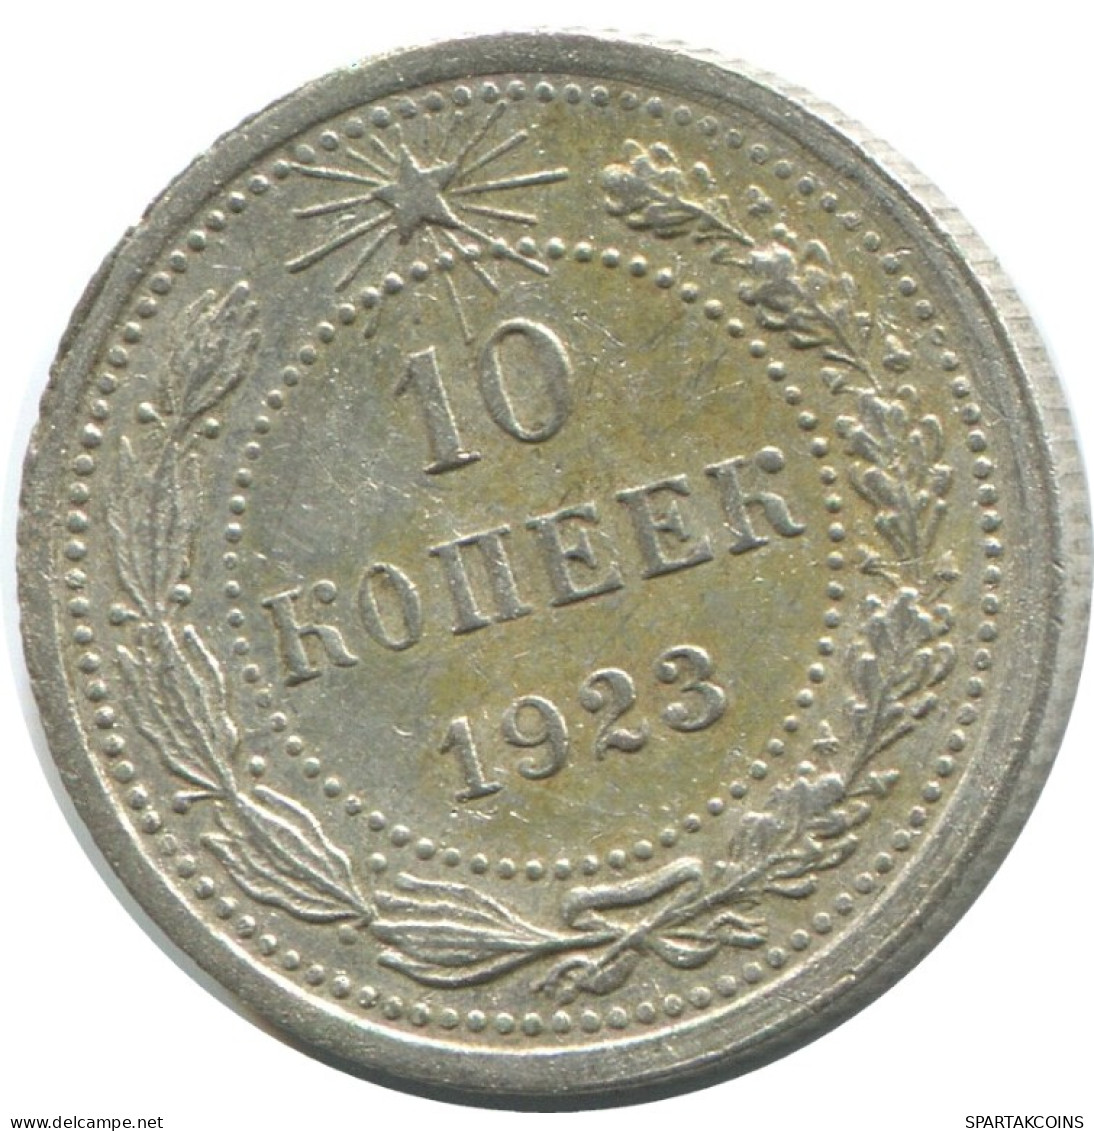 10 KOPEKS 1923 RUSSLAND RUSSIA RSFSR SILBER Münze HIGH GRADE #AE941.4.D.A - Russie